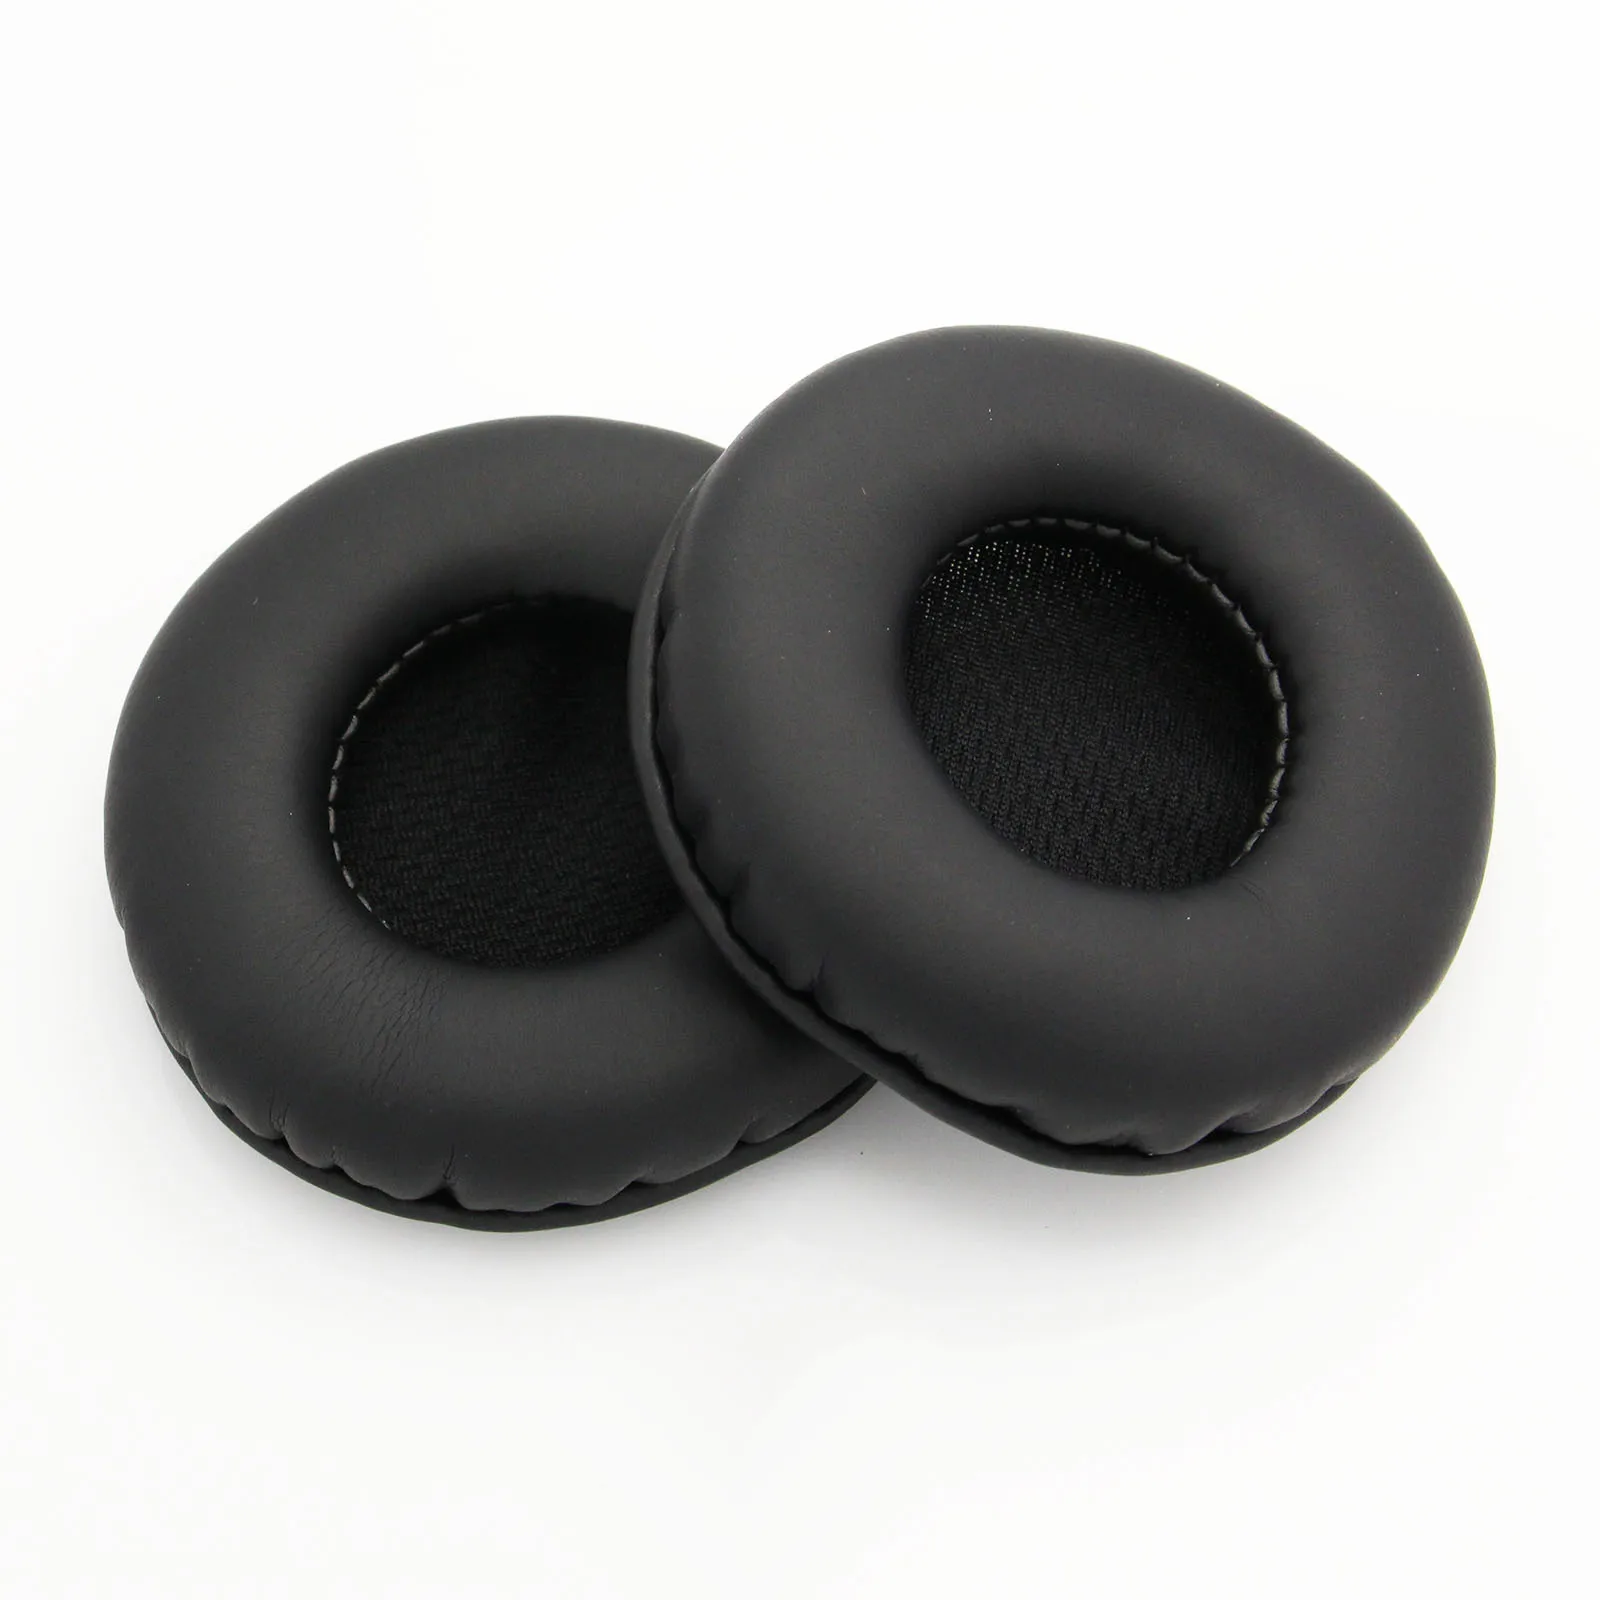 Eponge Housse de protection pour écouteurs pour S-ony MDR ZX310 K518 K518DJ K81 K518LE Mousse de rechange pour casque 